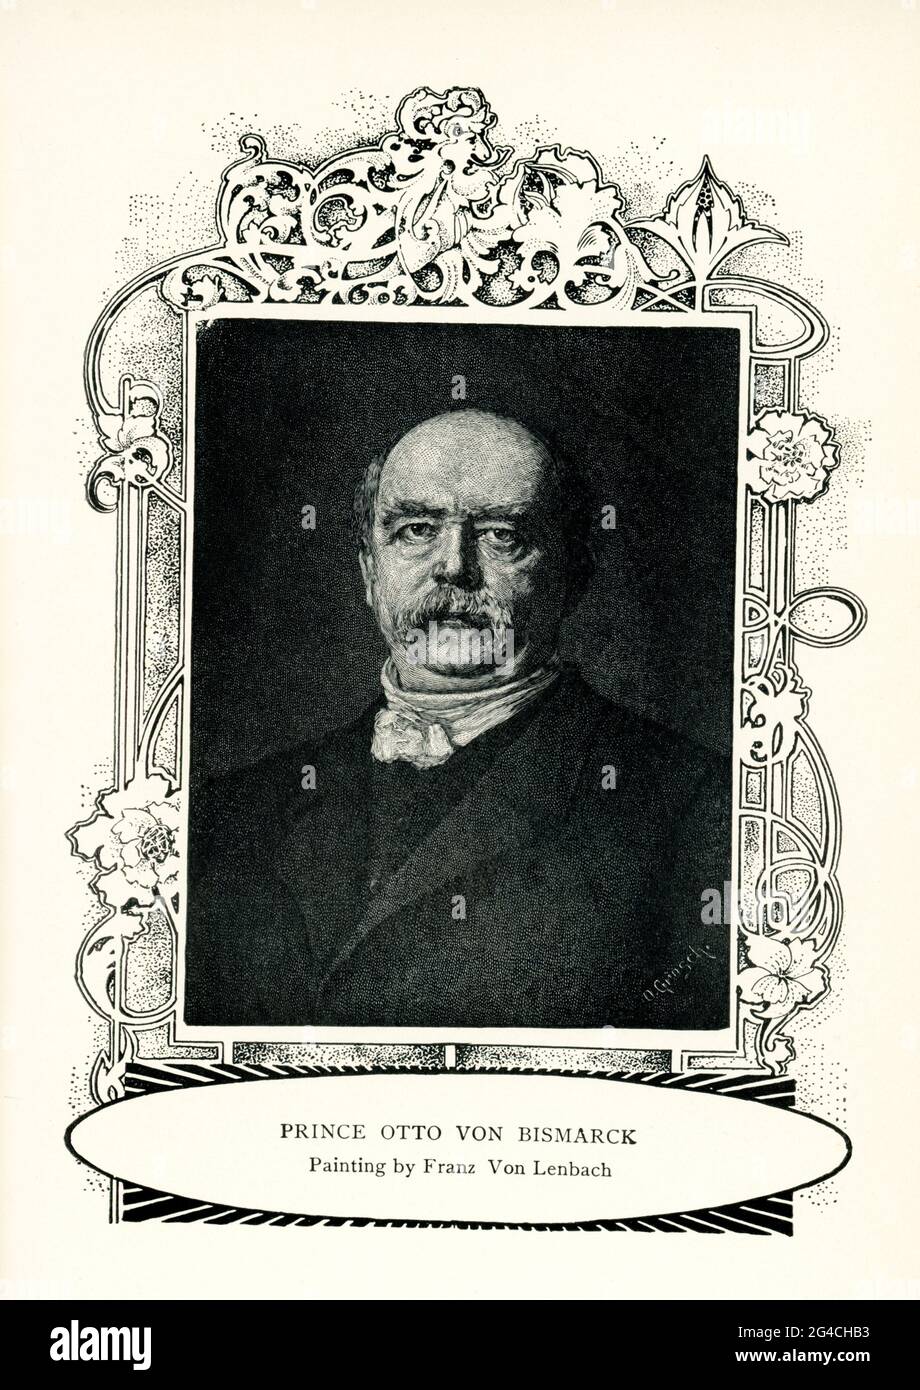 Cette illustration de 1899 montre le prince Otto von Bismarck, tel que peint par Franz Seraph Lenbach, après 1882, Ritter von Lenbach. Lenbach était un peintre allemand connu principalement pour ses portraits de personnalités éminentes de la noblesse, des arts et de l'industrie. En raison de sa position dans la société, il a souvent été appelé le 'Malerfürst'. Banque D'Images